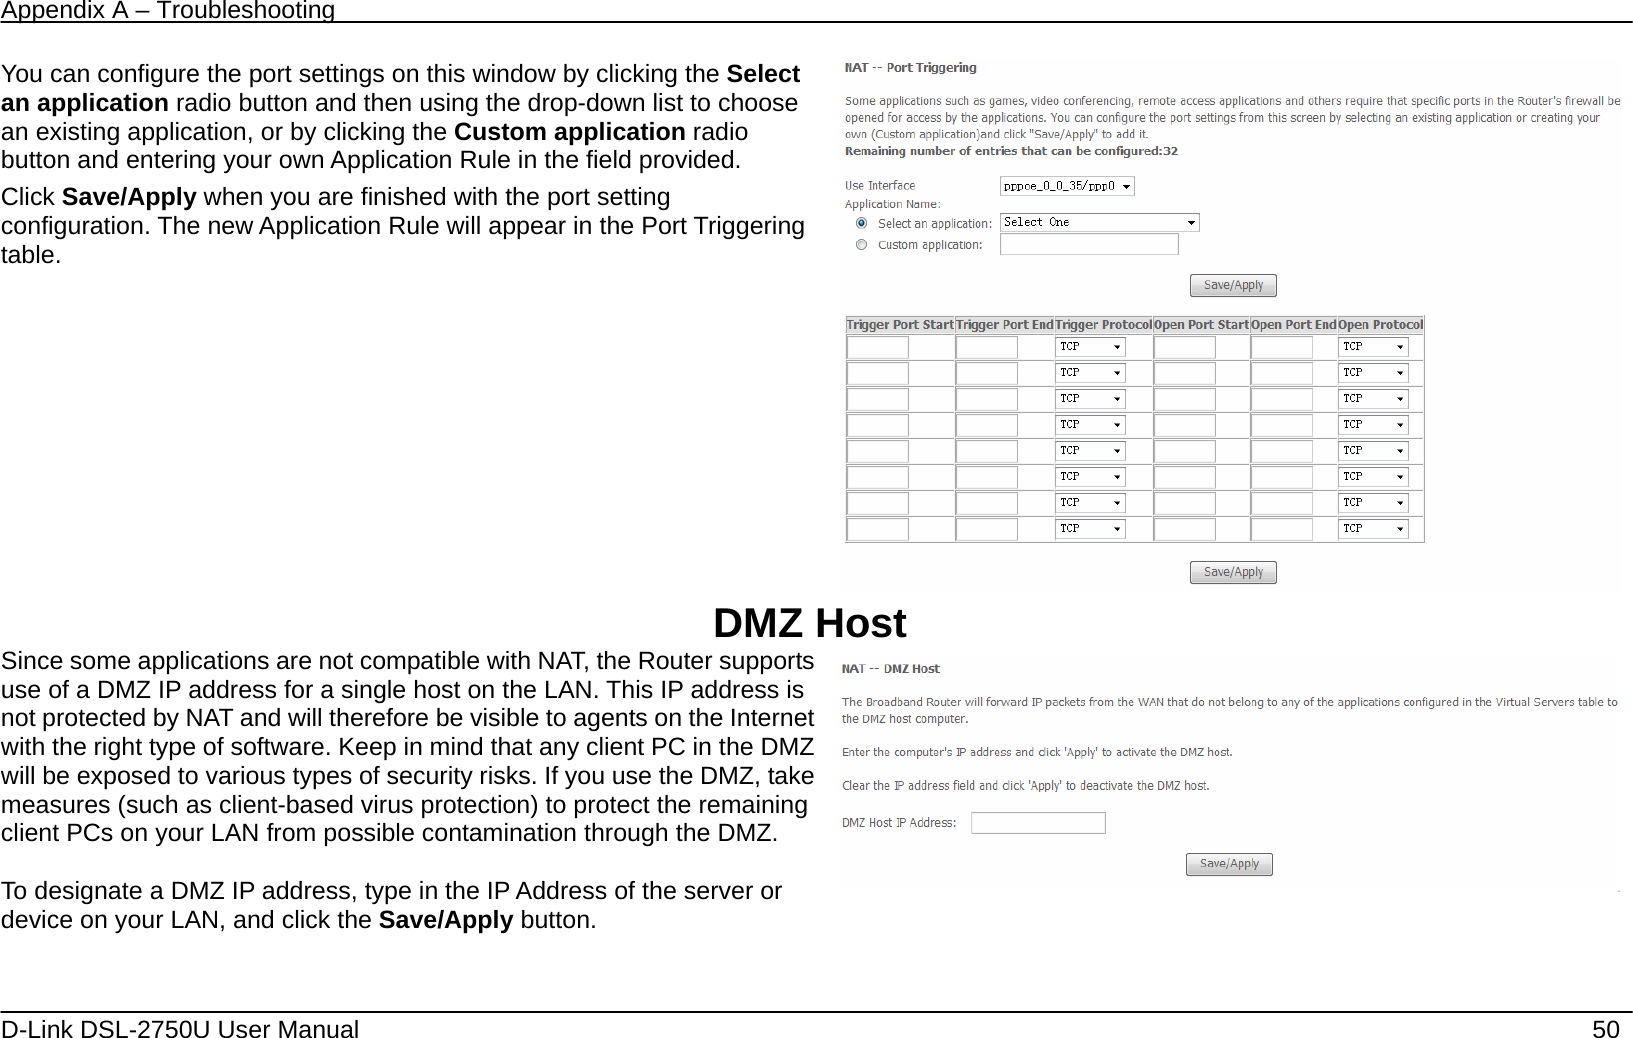 D-link dir-835 user manual pdf